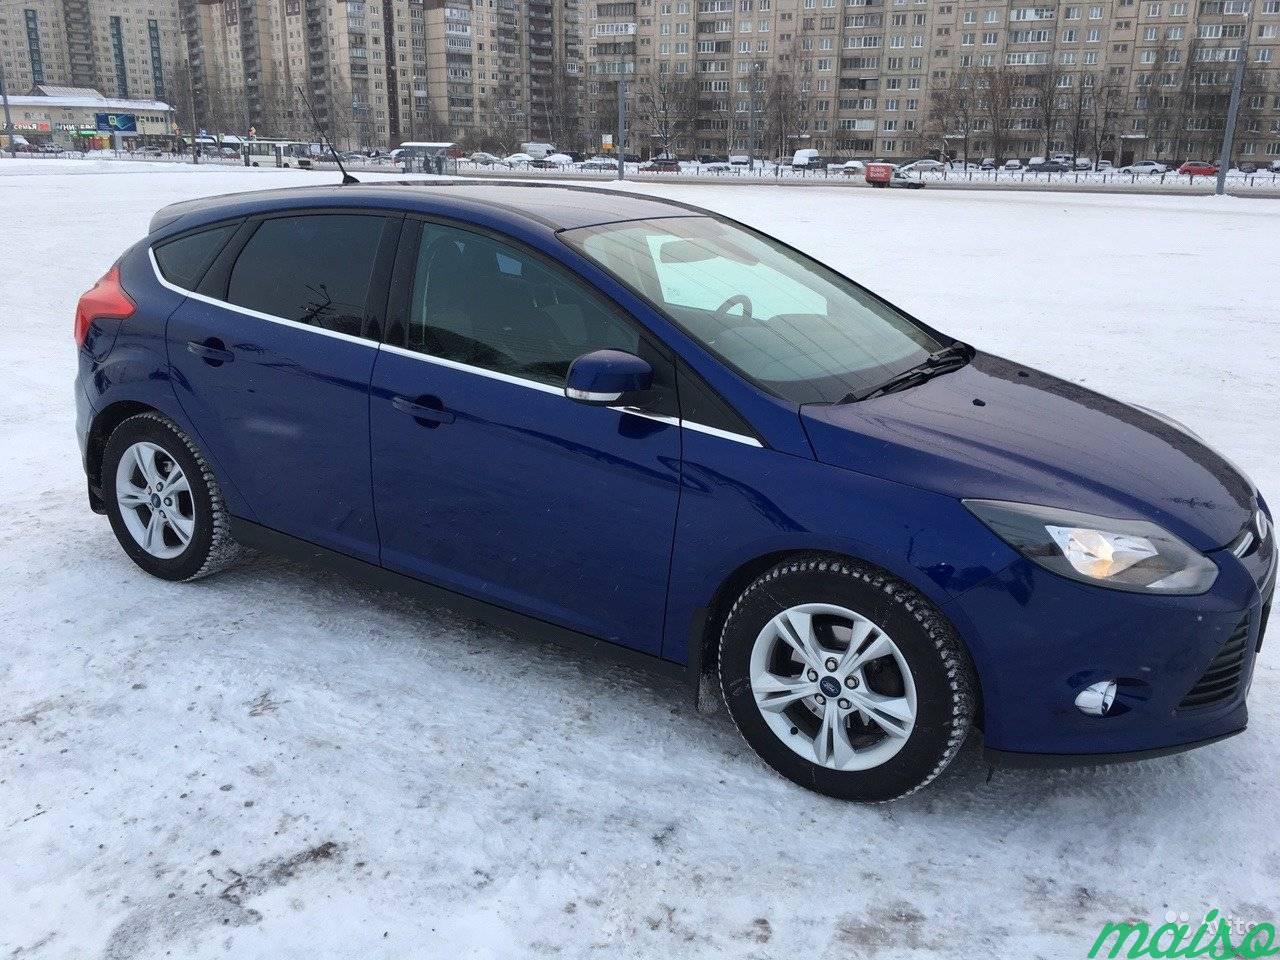 Ford Focus 1.6 AT, 2014, хетчбэк в Санкт-Петербурге. Фото 2